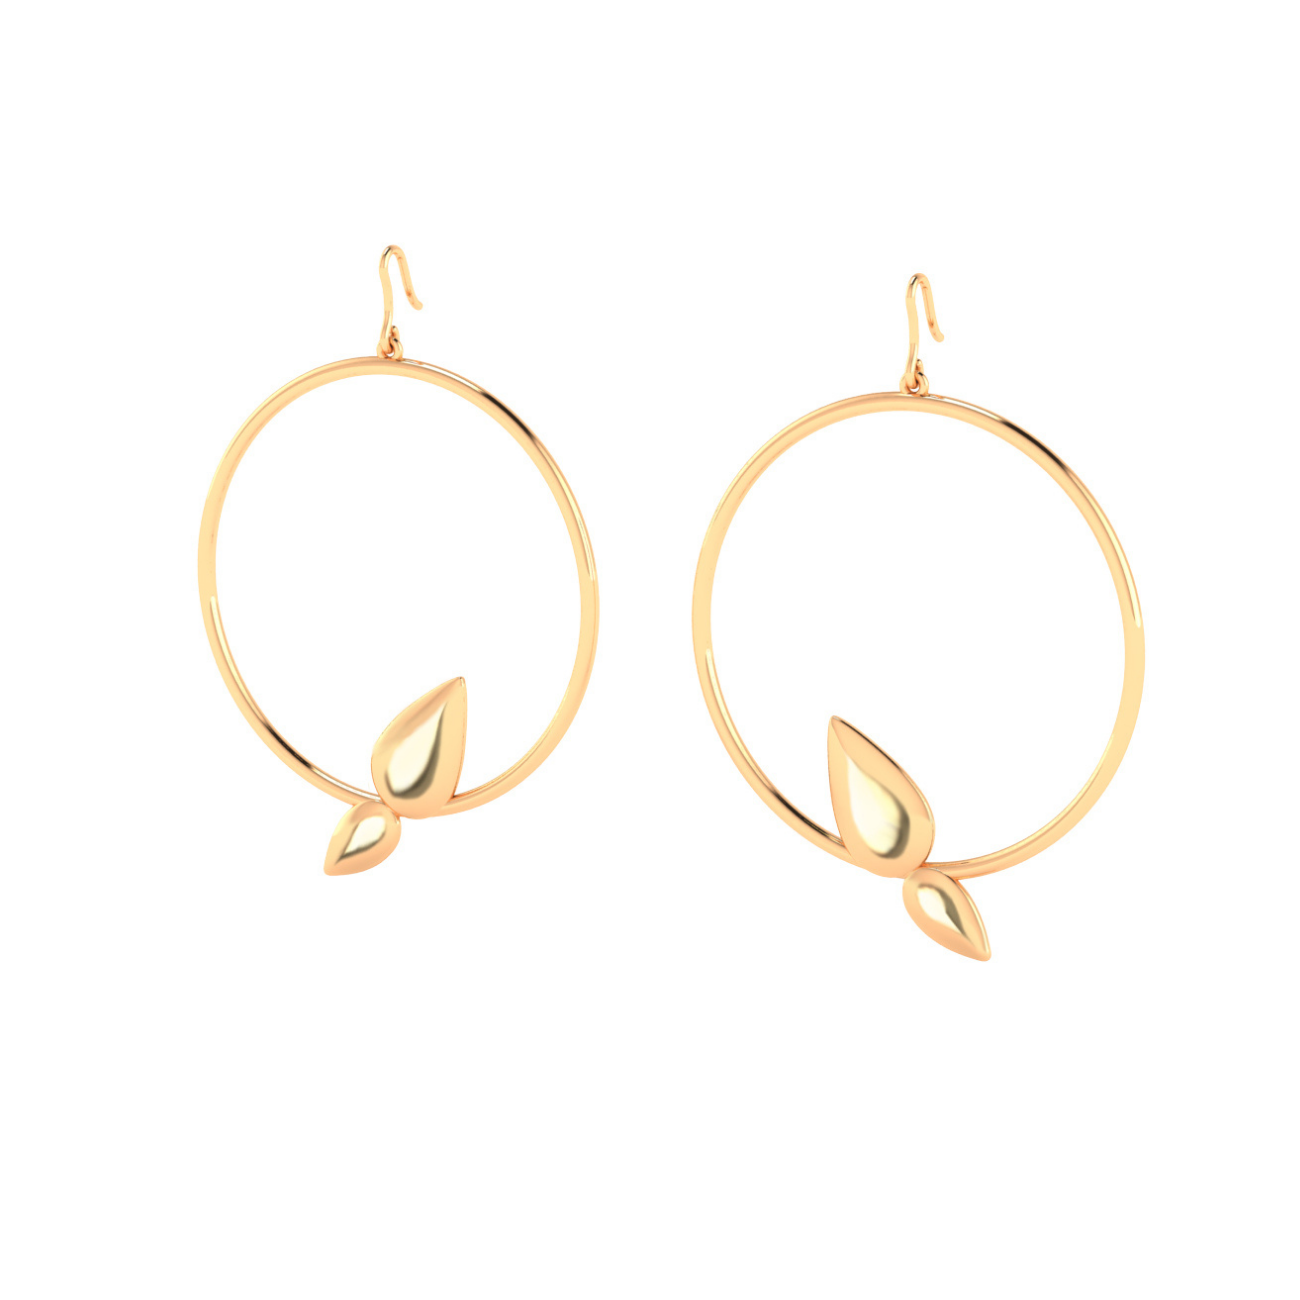 Lotus hoop earrings, 18k gold